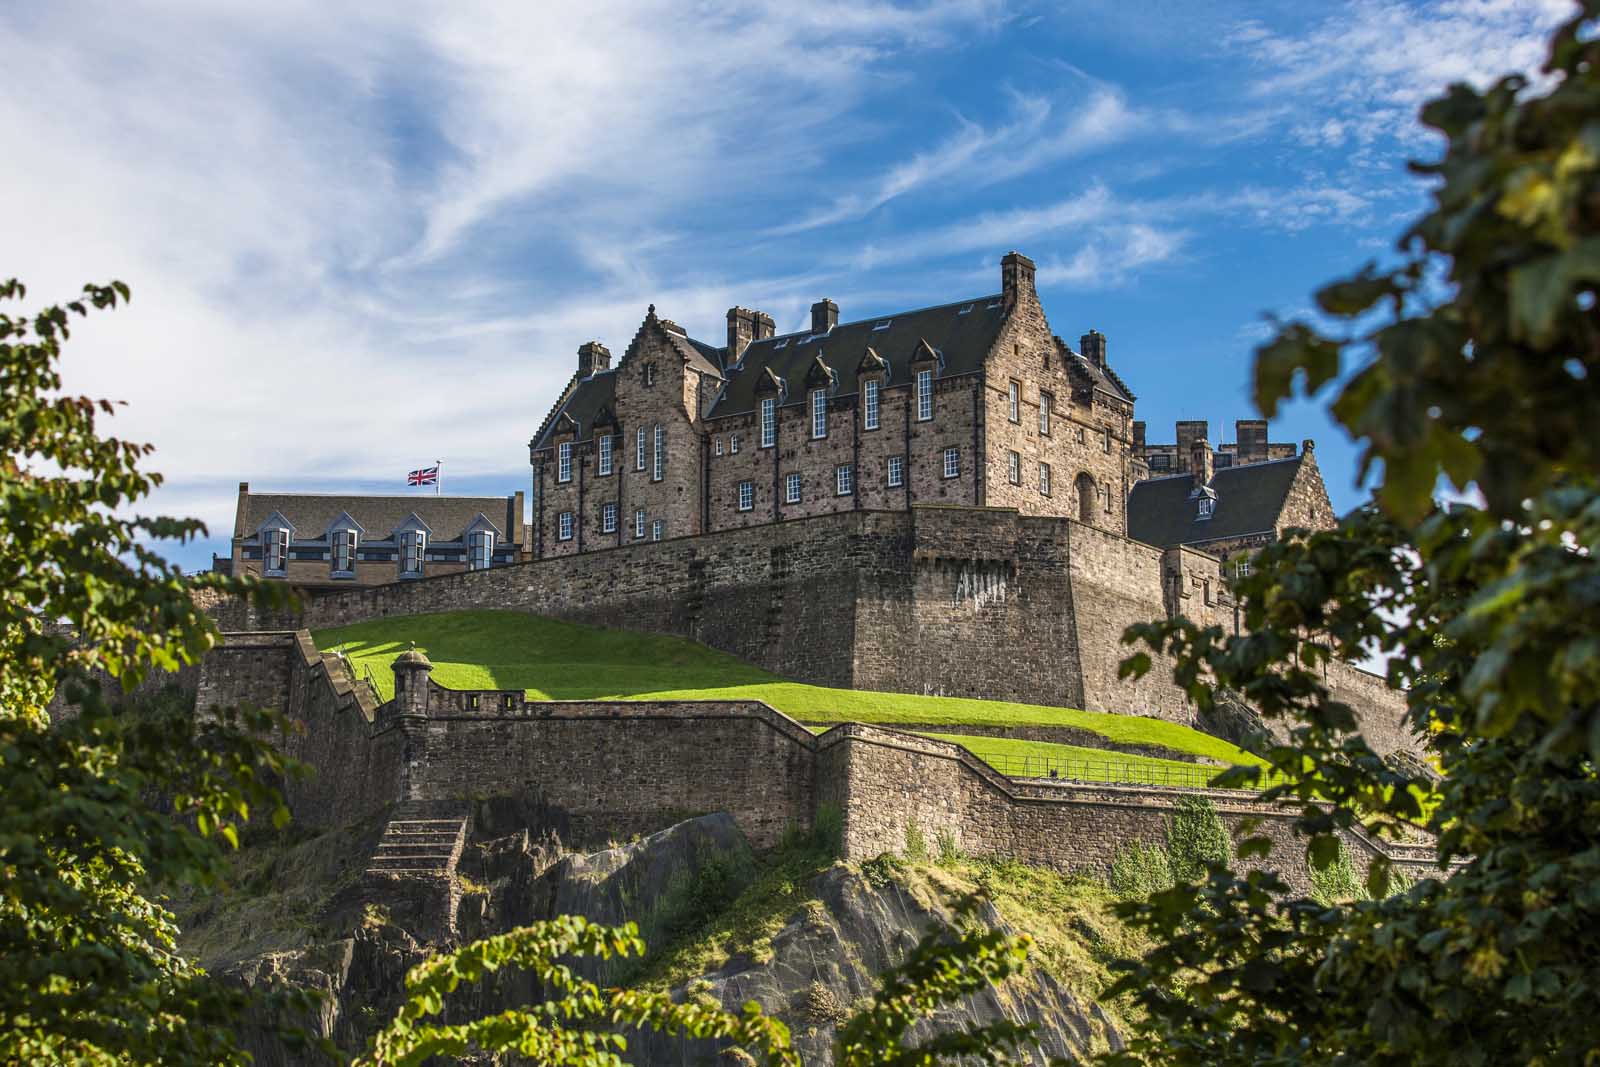 Edinburgh castle in the Old Town Edinburgh